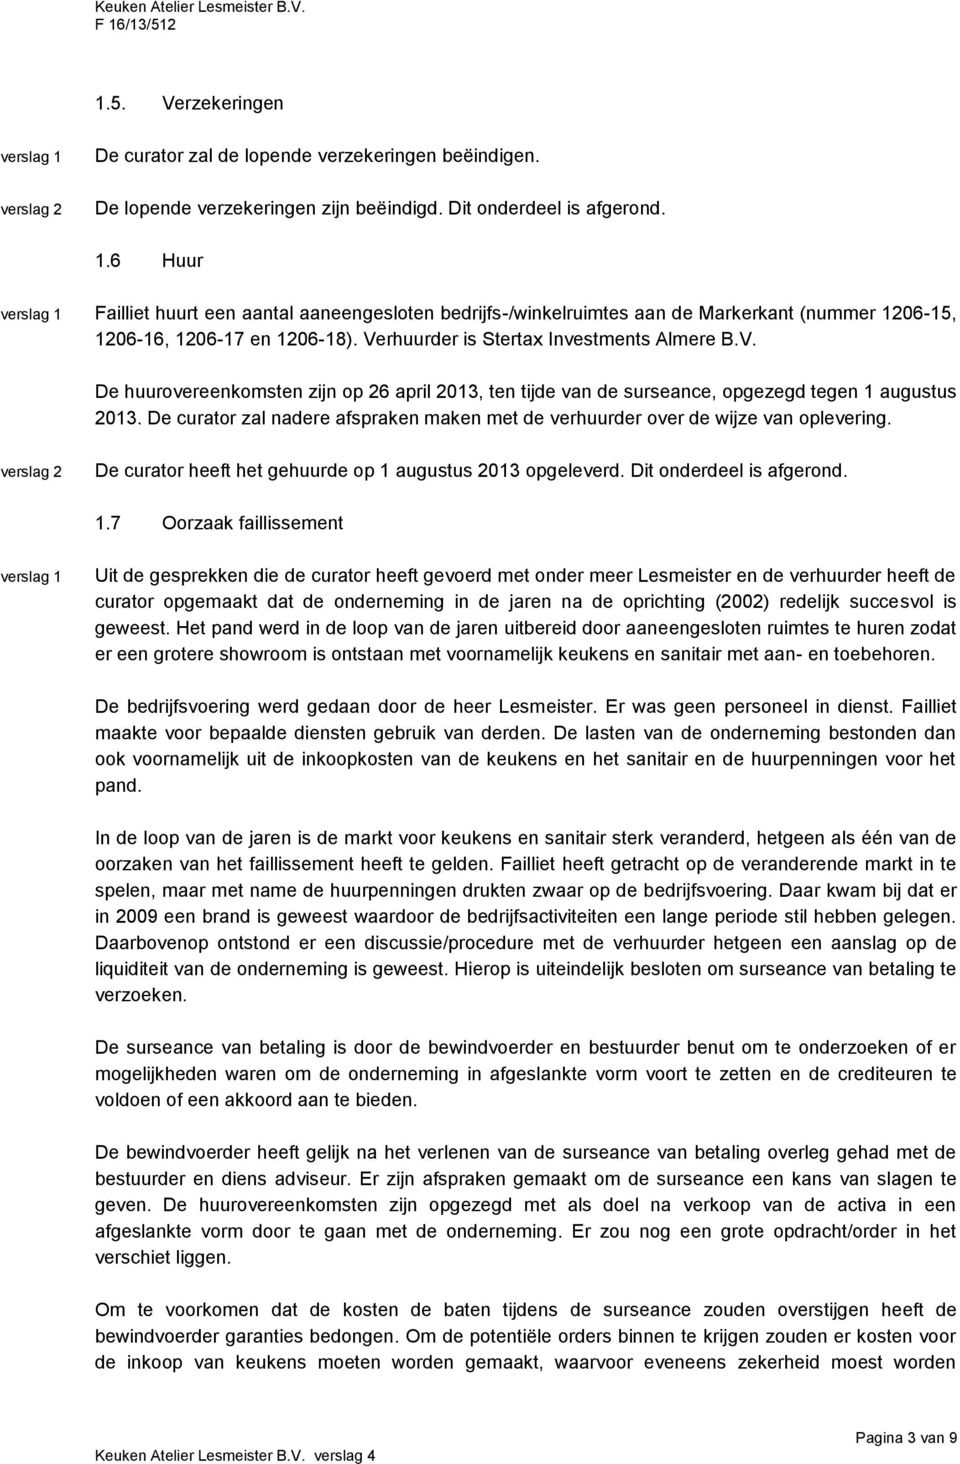 rhuurder is Stertax Investments Almere B.V. De huurovereenkomsten zijn op 26 april 2013, ten tijde van de surseance, opgezegd tegen 1 augustus 2013.